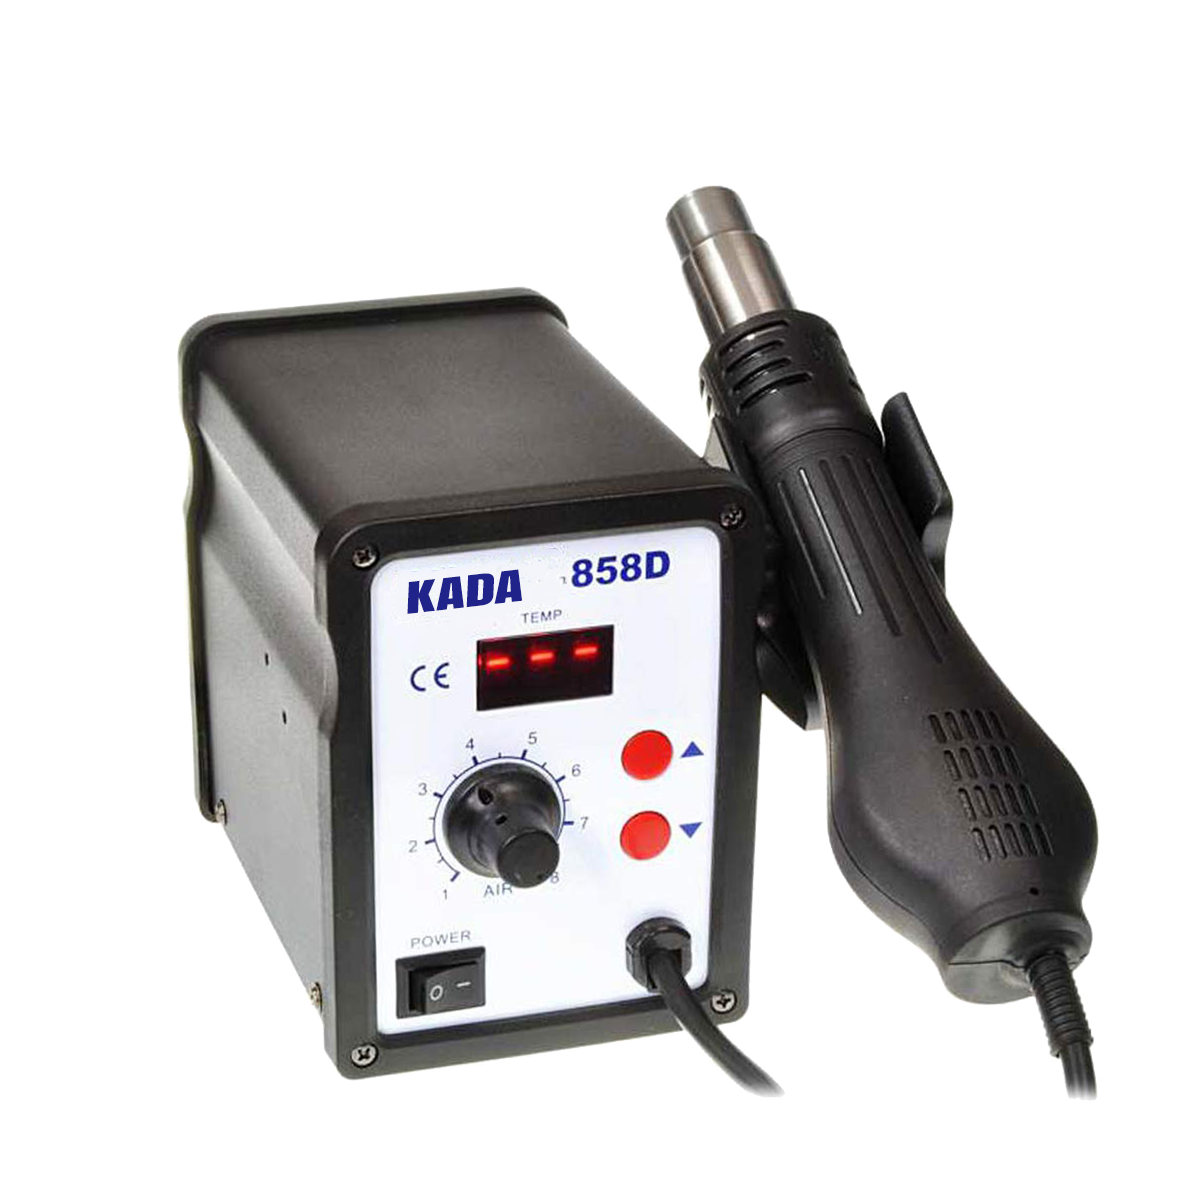 KADA 858D Hot Air Heat Gun SMD Rework Station